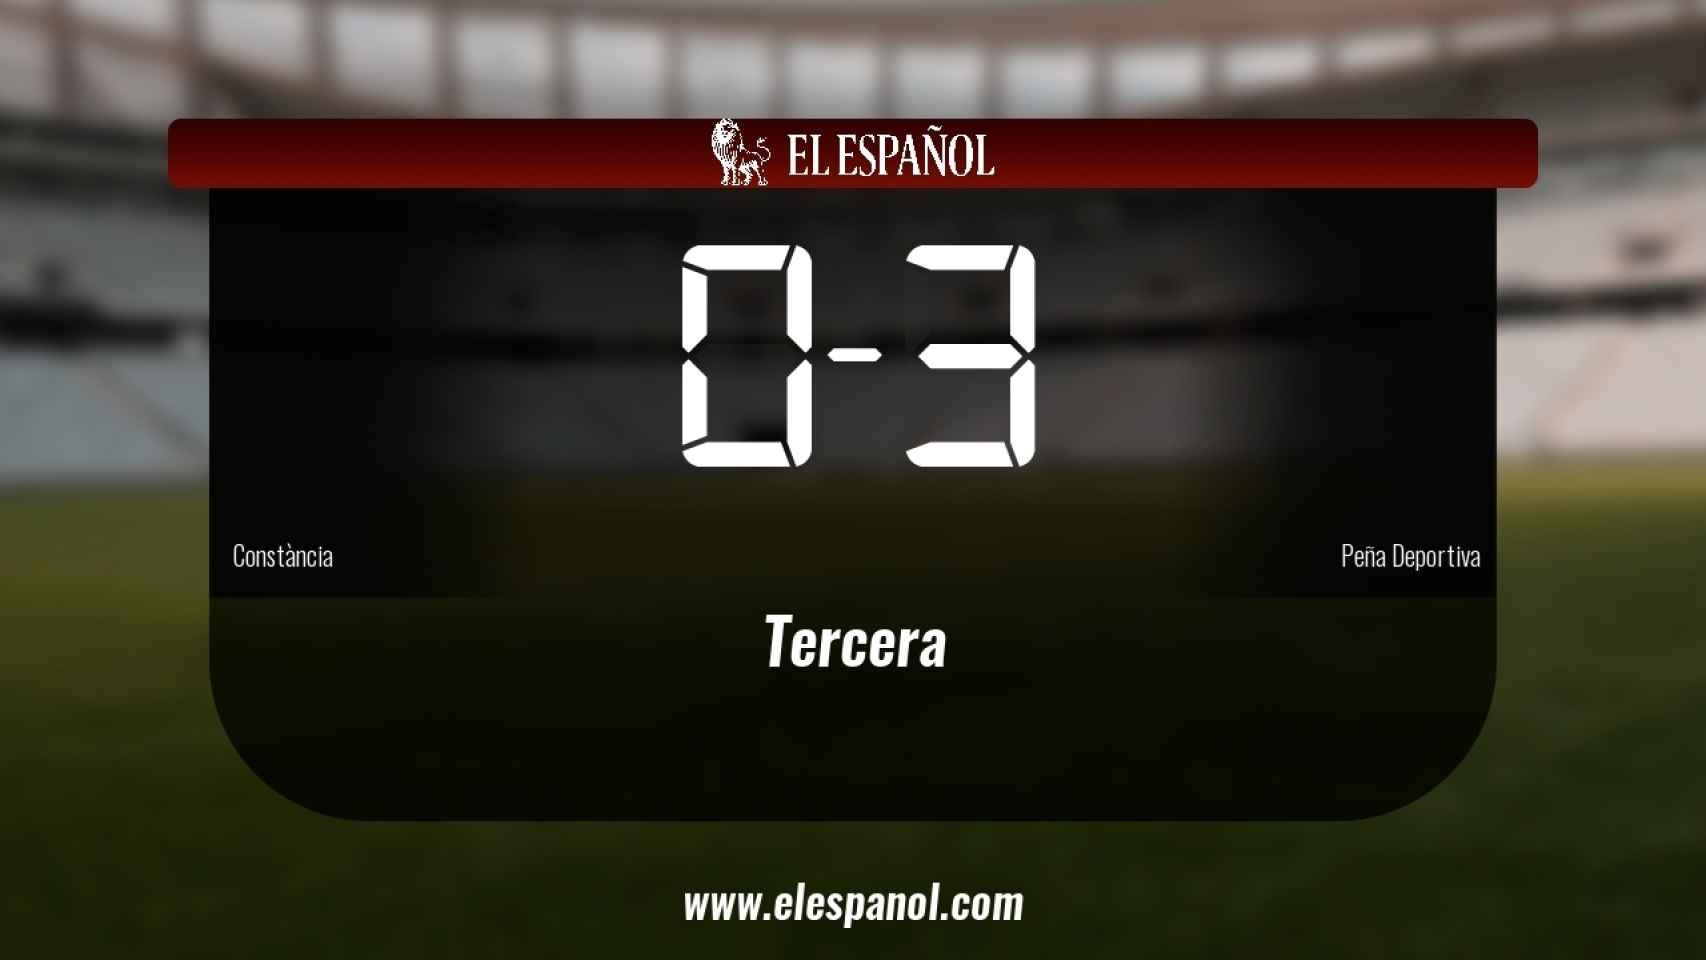 La Peña Deportiva vence por 0-3 al Constància